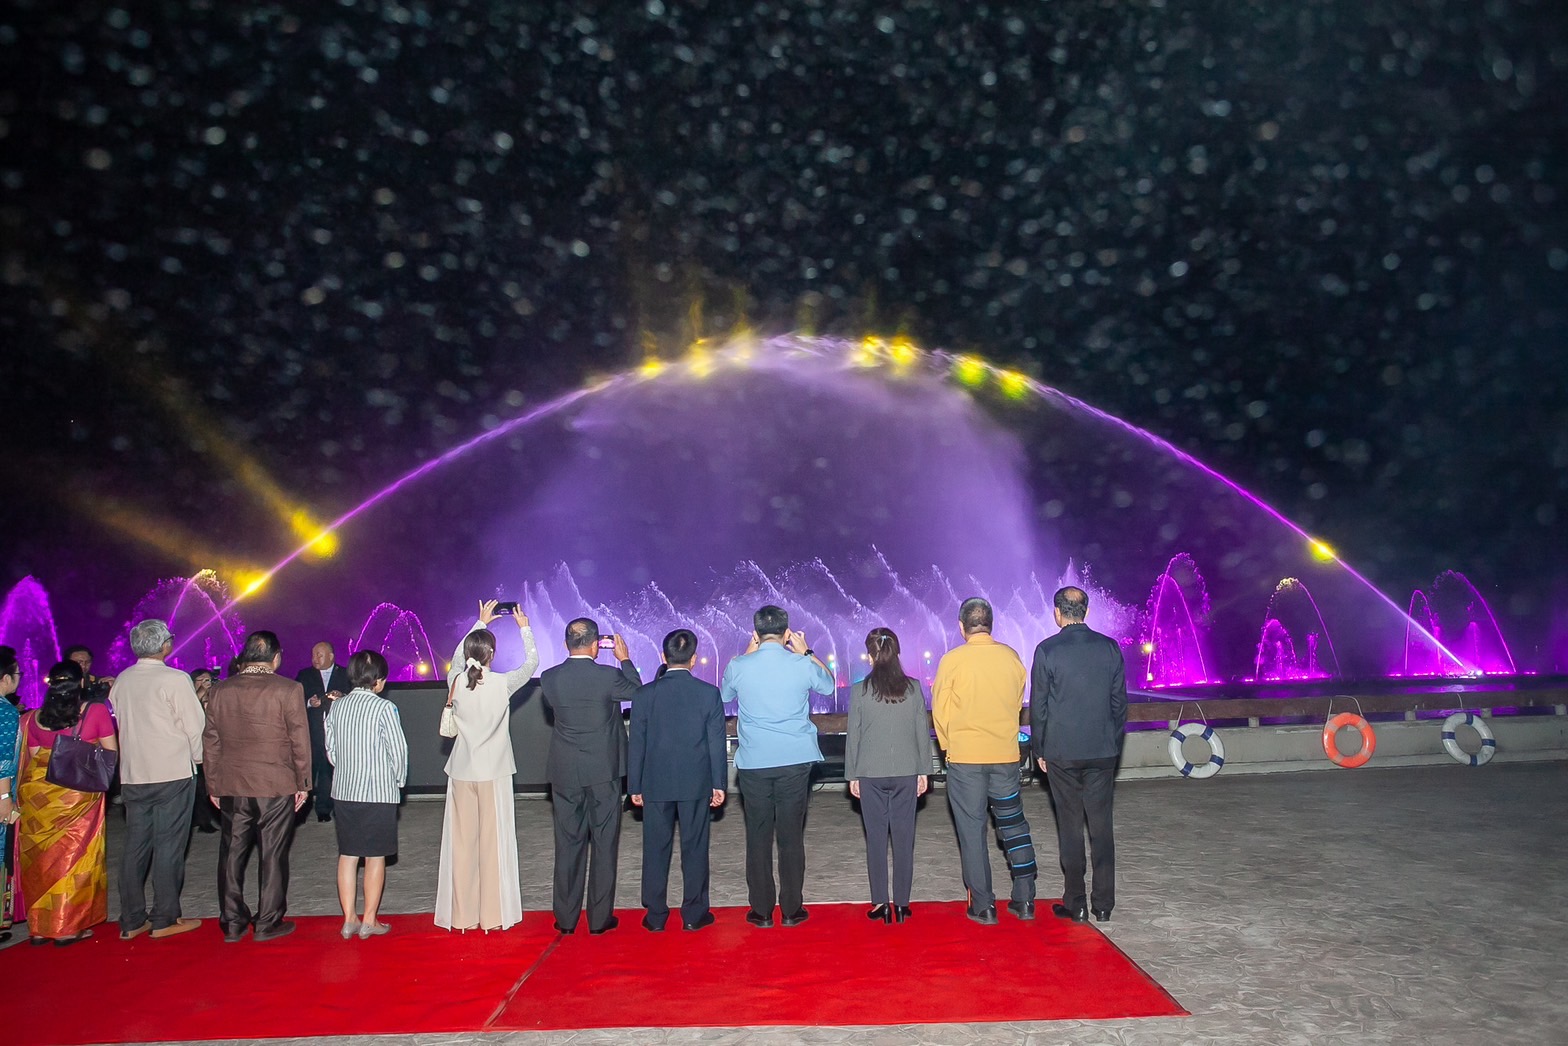 เชียงใหม่ไนท์ซาฟารี จัดกิจกรรมต้อนรับลมหนาว Grand Opening Musical Fountain น้ำพุดนตรีที่สูงที่สุดในเอเชีย